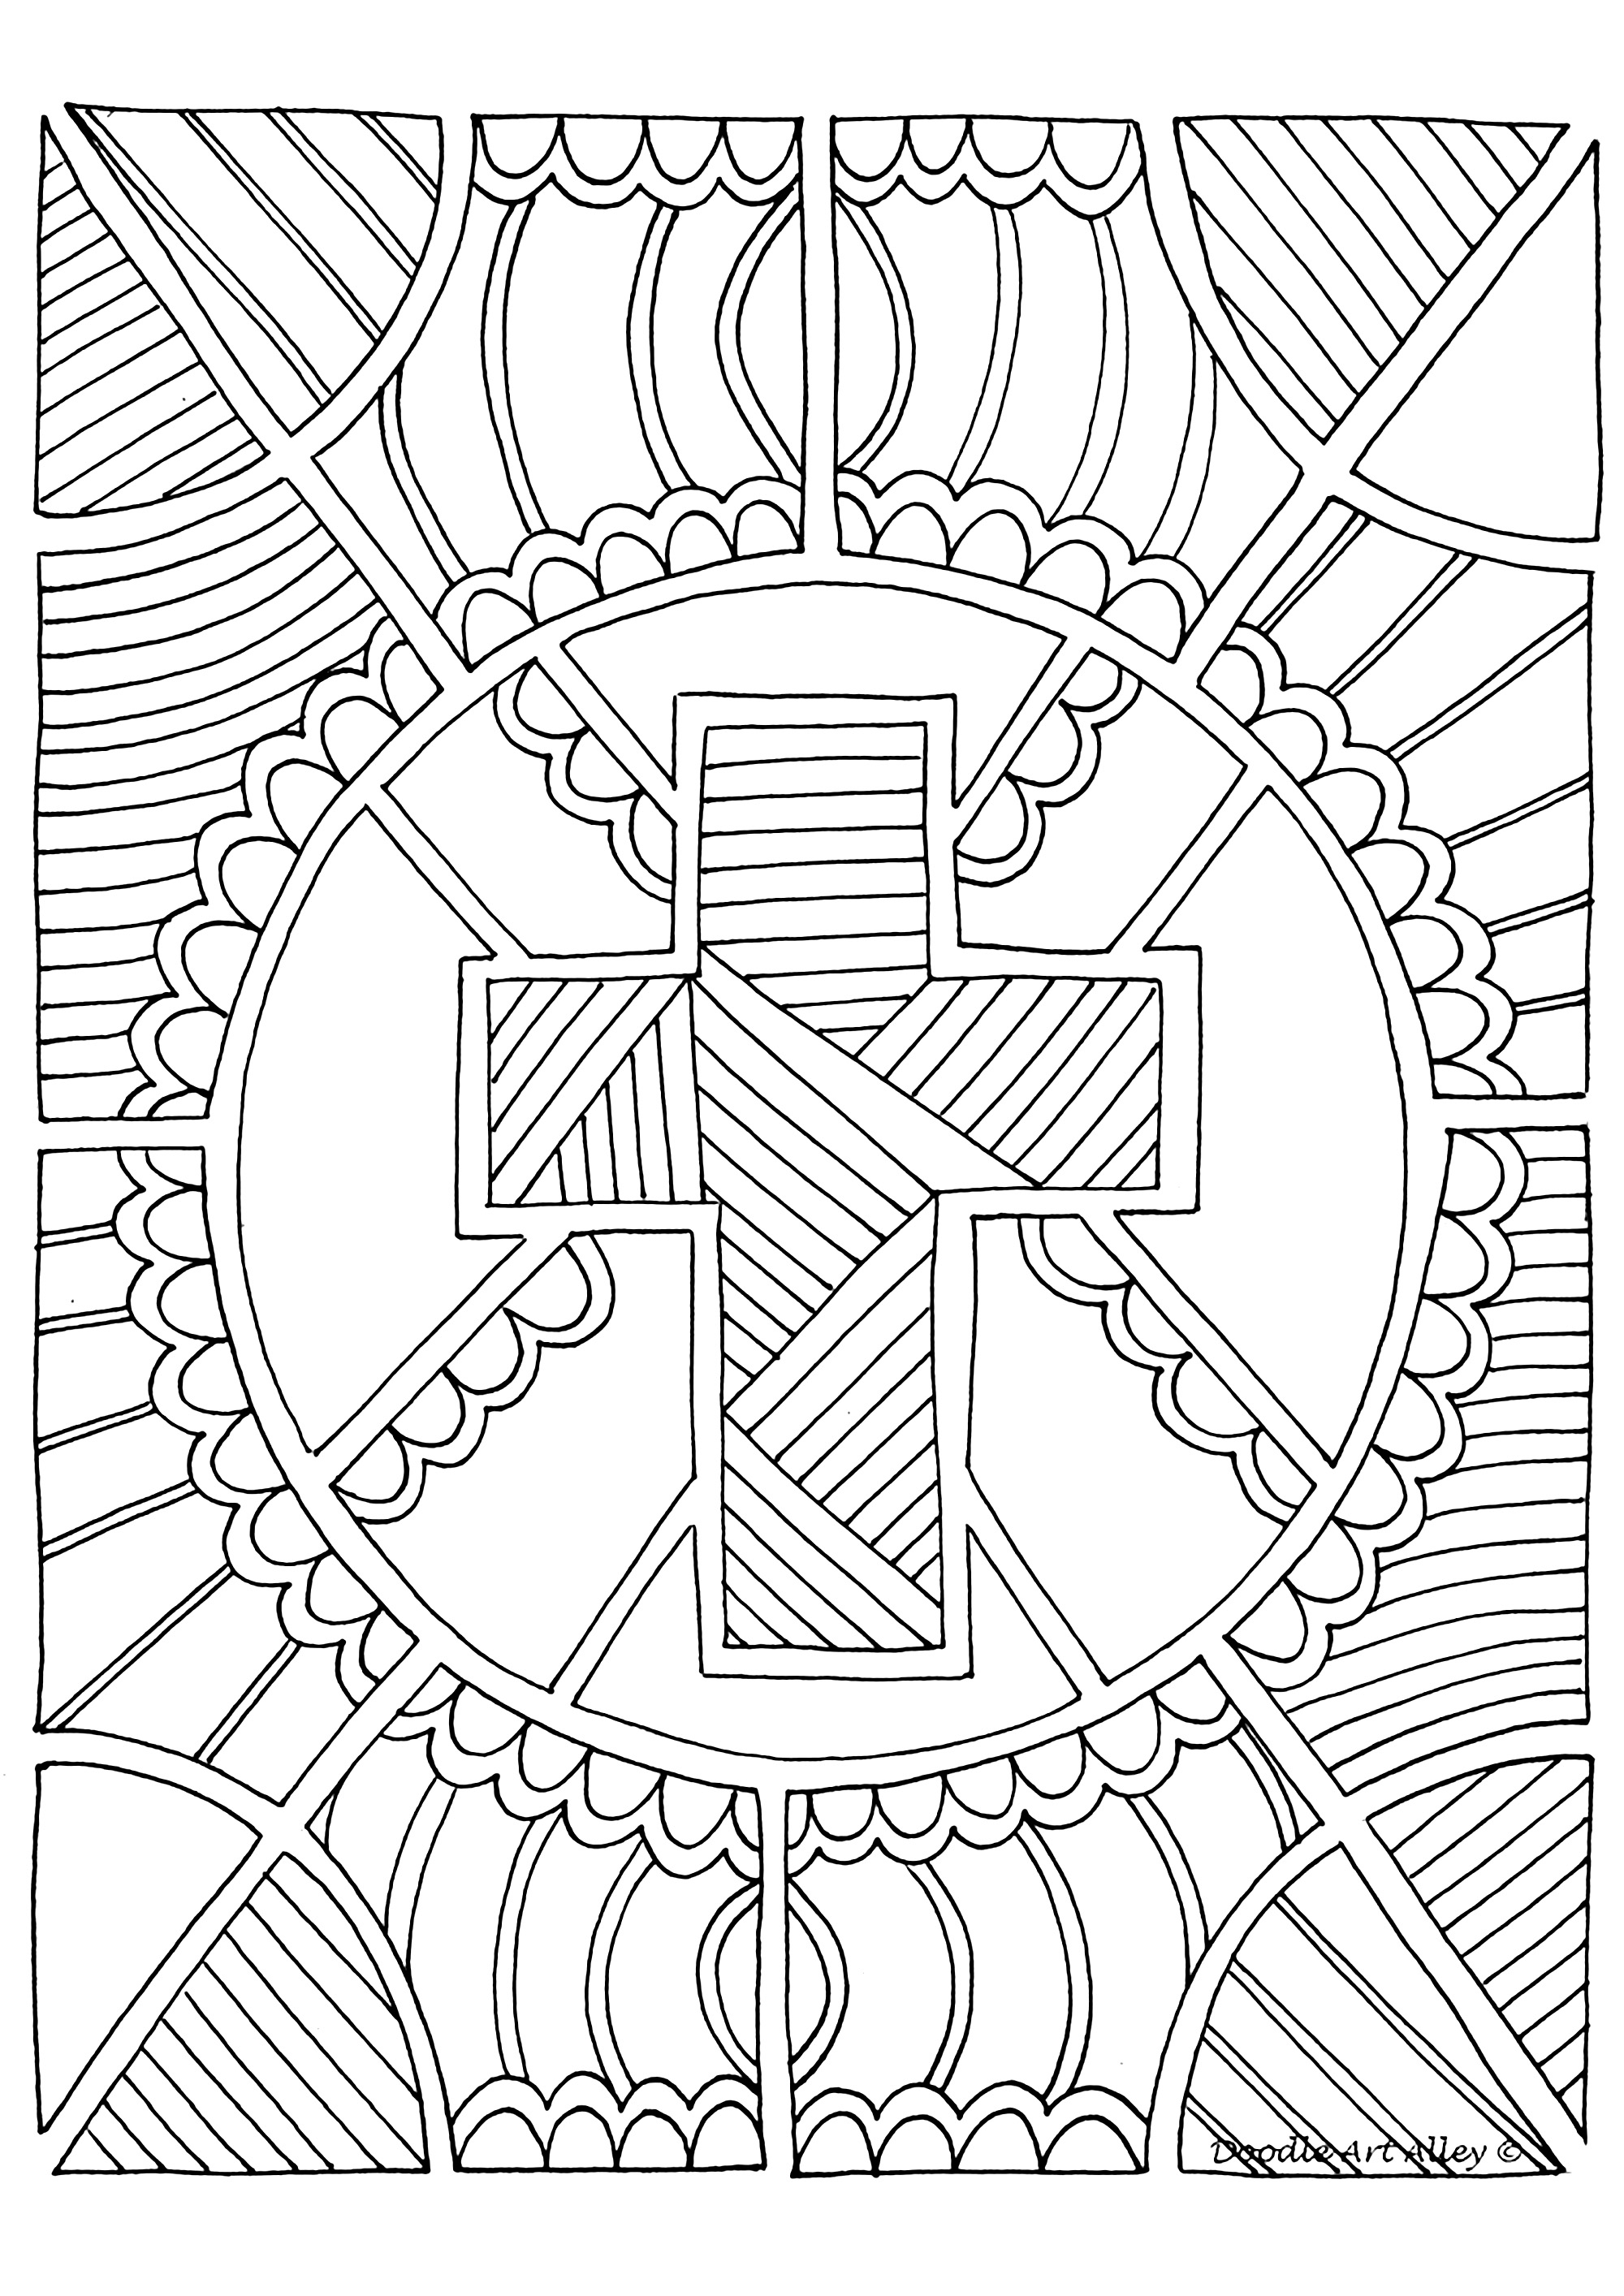 La Croix, symbole du Christianisme. Un dessin avec de nombreux motifs à colorier